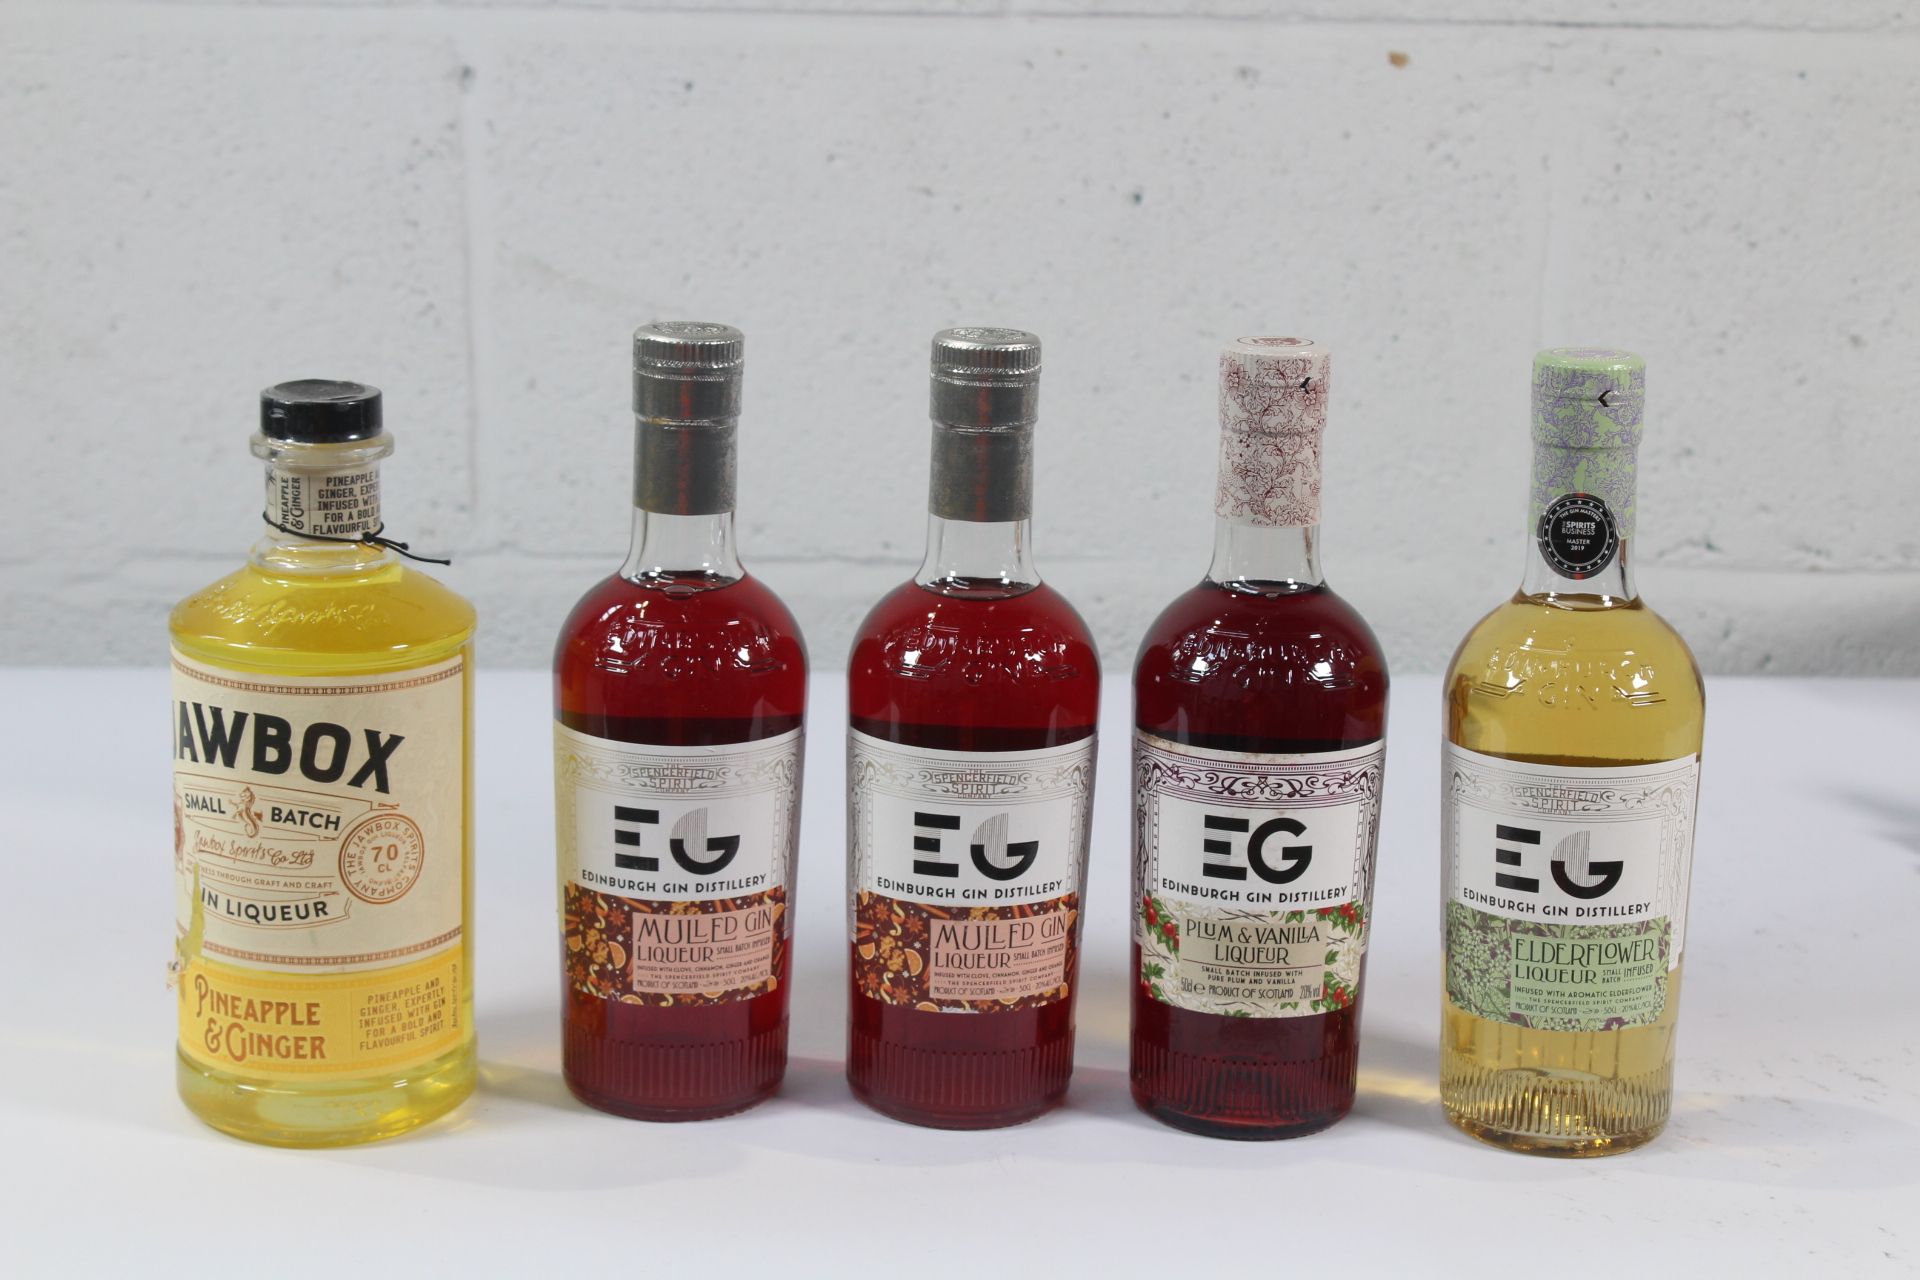 Two Edinburgh Mulled Gin Liqueur 2 x 500ml, Edinburgh Gin Plum & Vanilla Liqueur 1 x 500ml, Edinburg